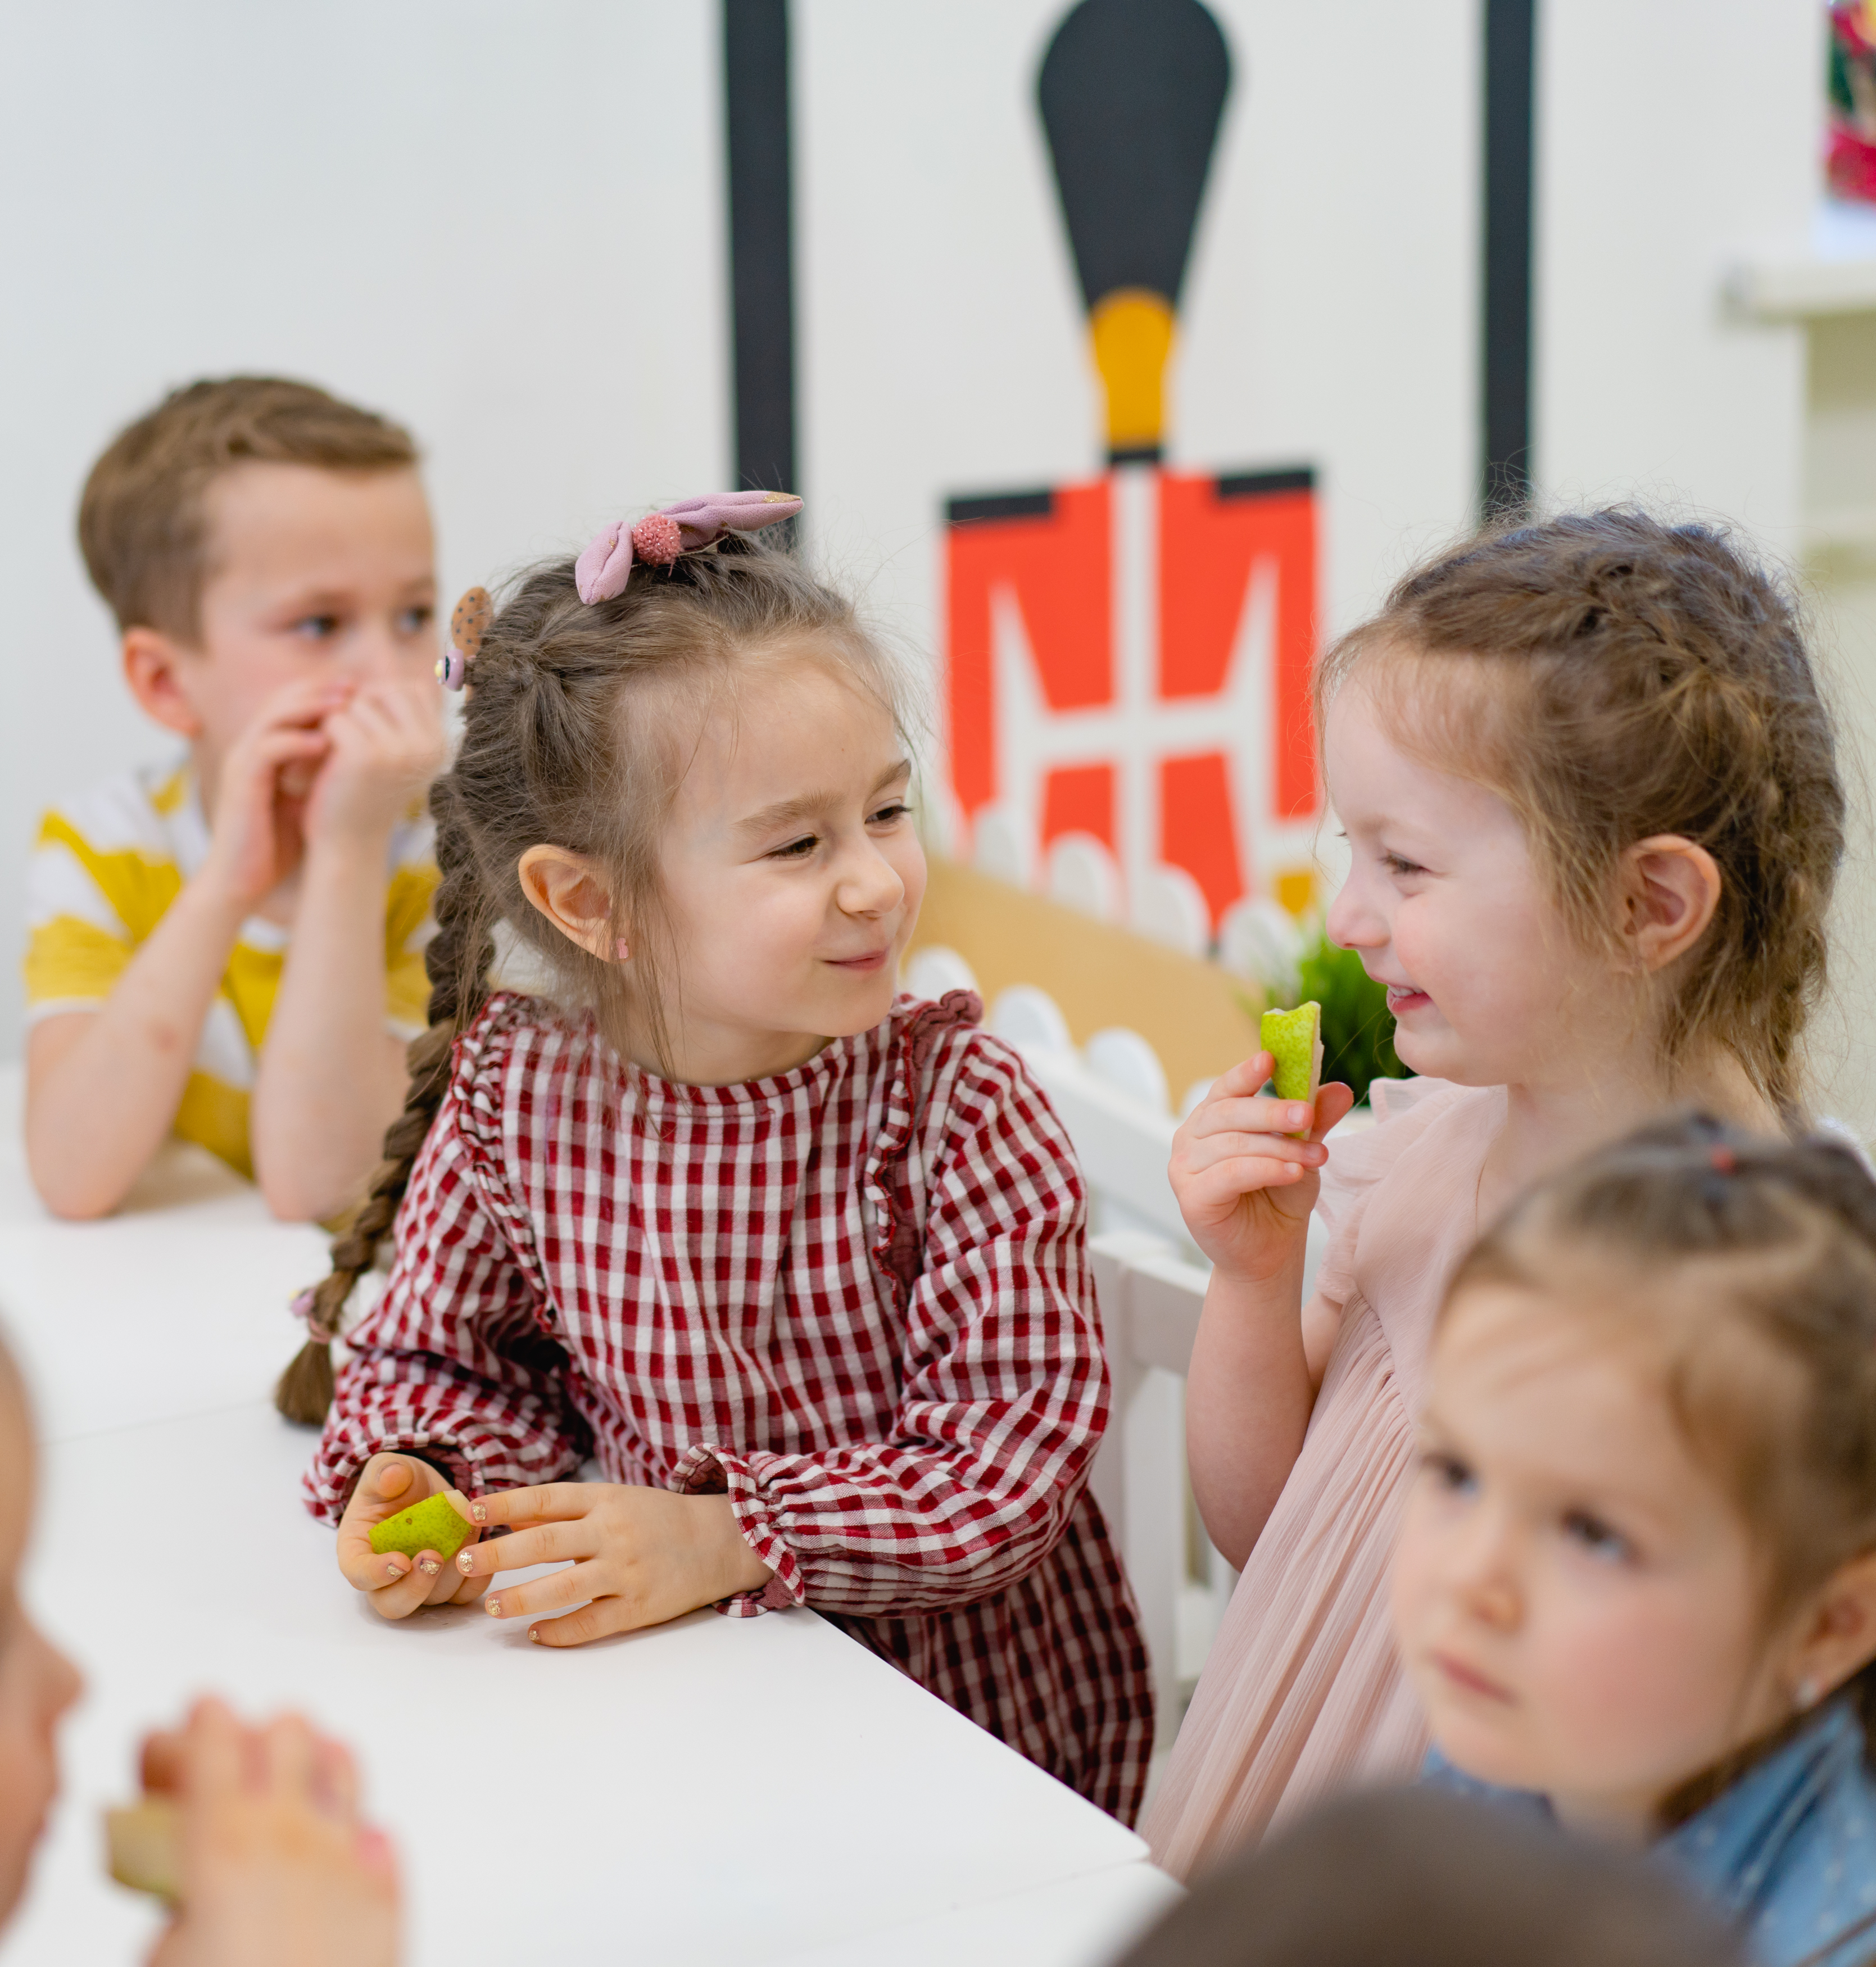 фото: Альбом детских песен сети детских садов Smile Fish занял первое место в чарте Яндекс Музыка